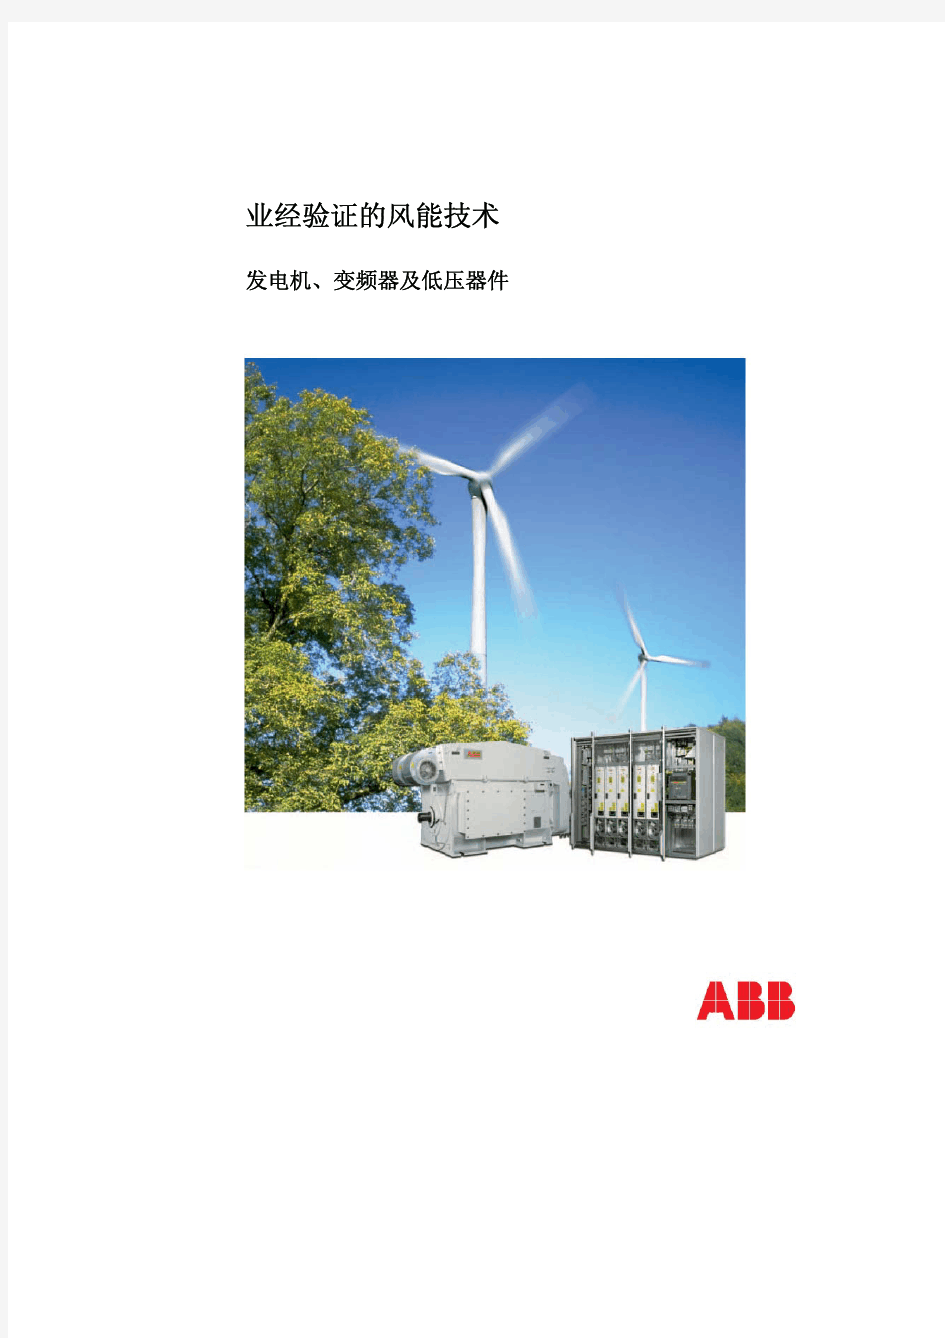 ABB业经验证的风能技术